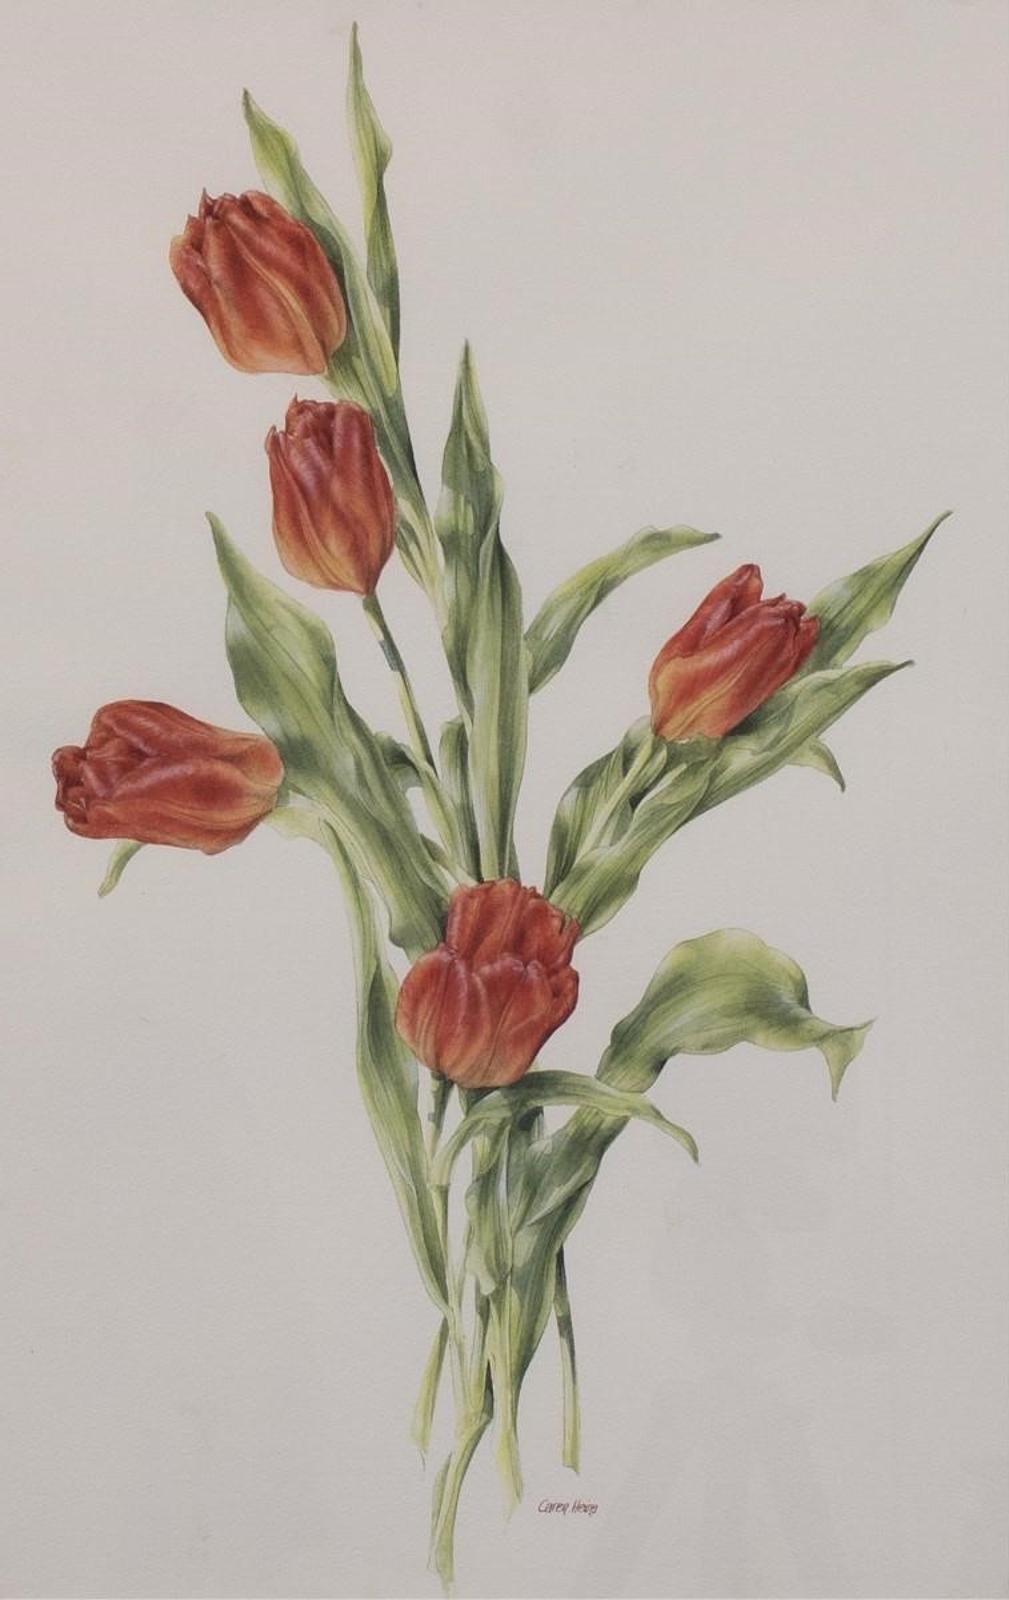 Caren Heine (1958) - Untitled, Tulips